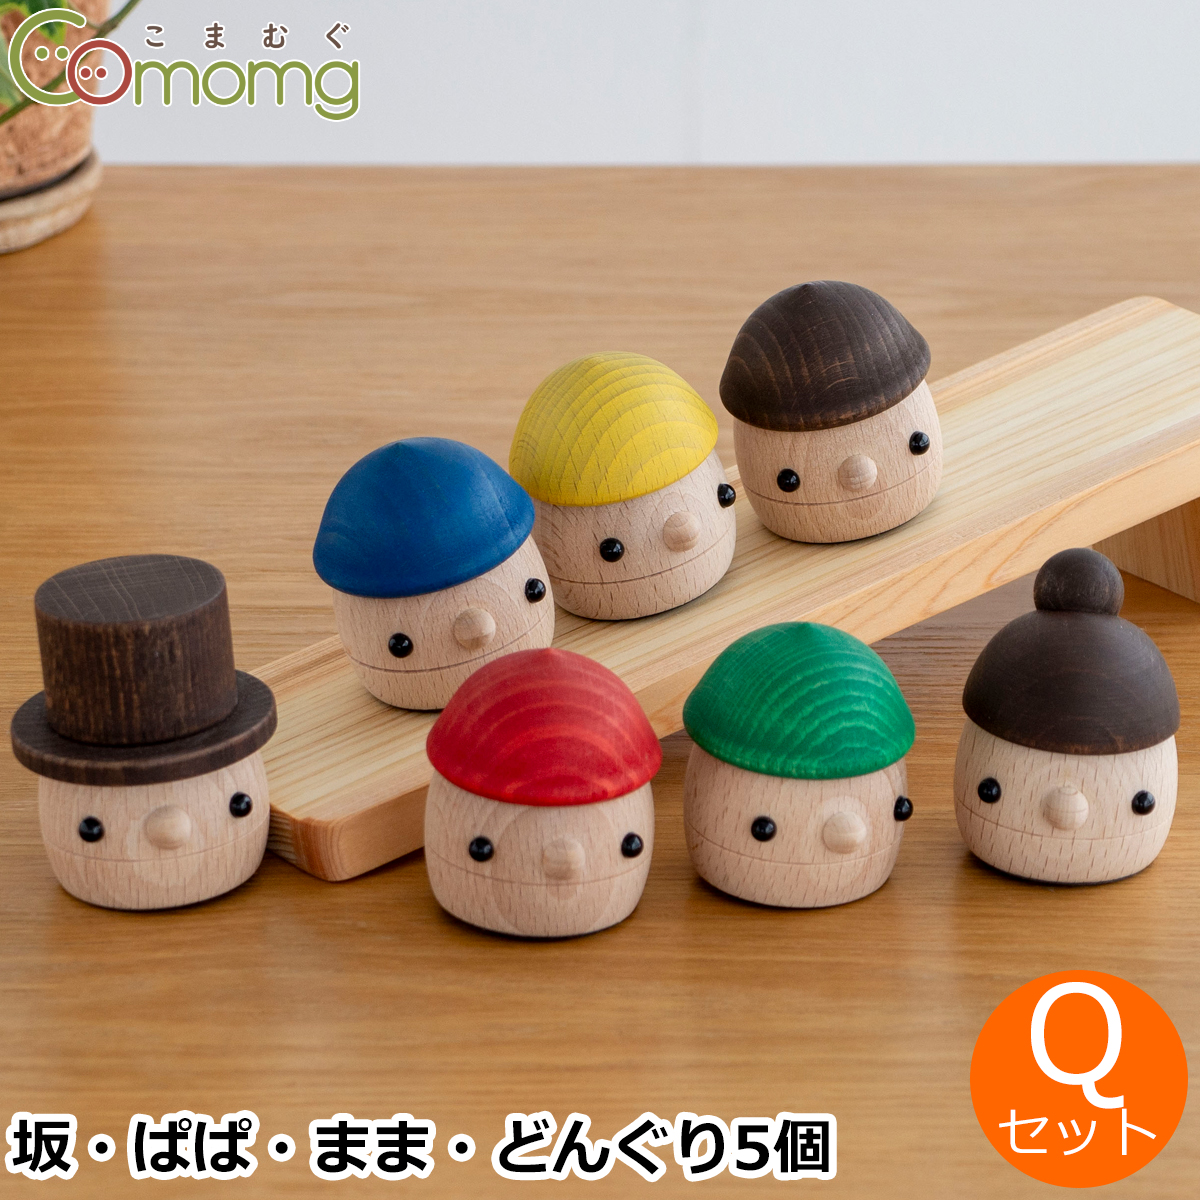 こまむぐ Qセット(どんぐりの坂 どんぐりぱぱ どんぐりまま どんぐりころころ5個) 木のおもちゃ 木製 日本製 おもちゃのこまーむ